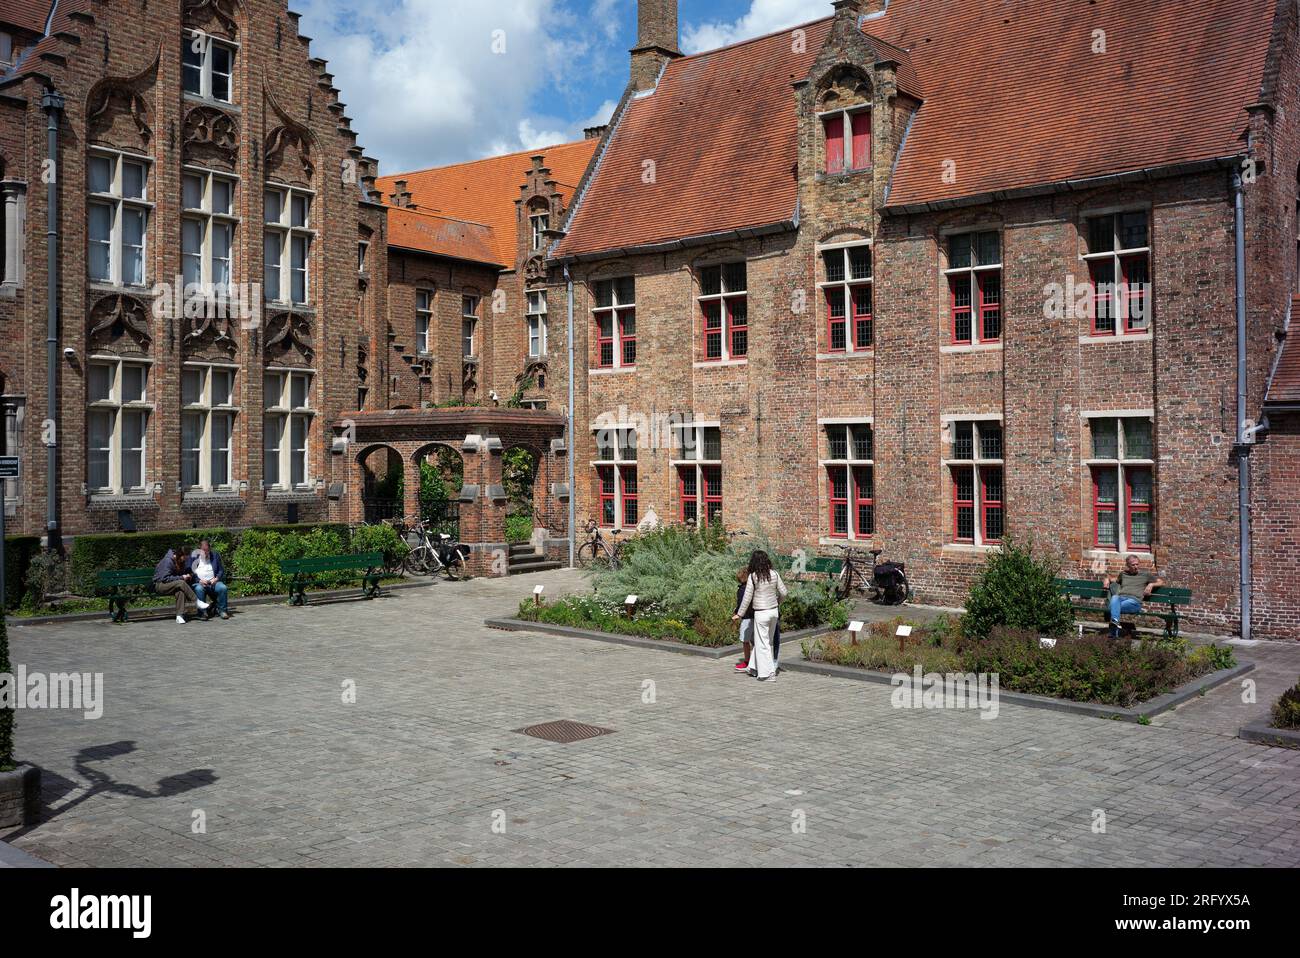 Blick auf das Krankenhaus von Saint John, es war ein mittelalterliches Krankenhaus in Brügge. Gegründet Mitte des 12. Jahrhunderts in Brügge, Belgien, am 2. August 20 Stockfoto